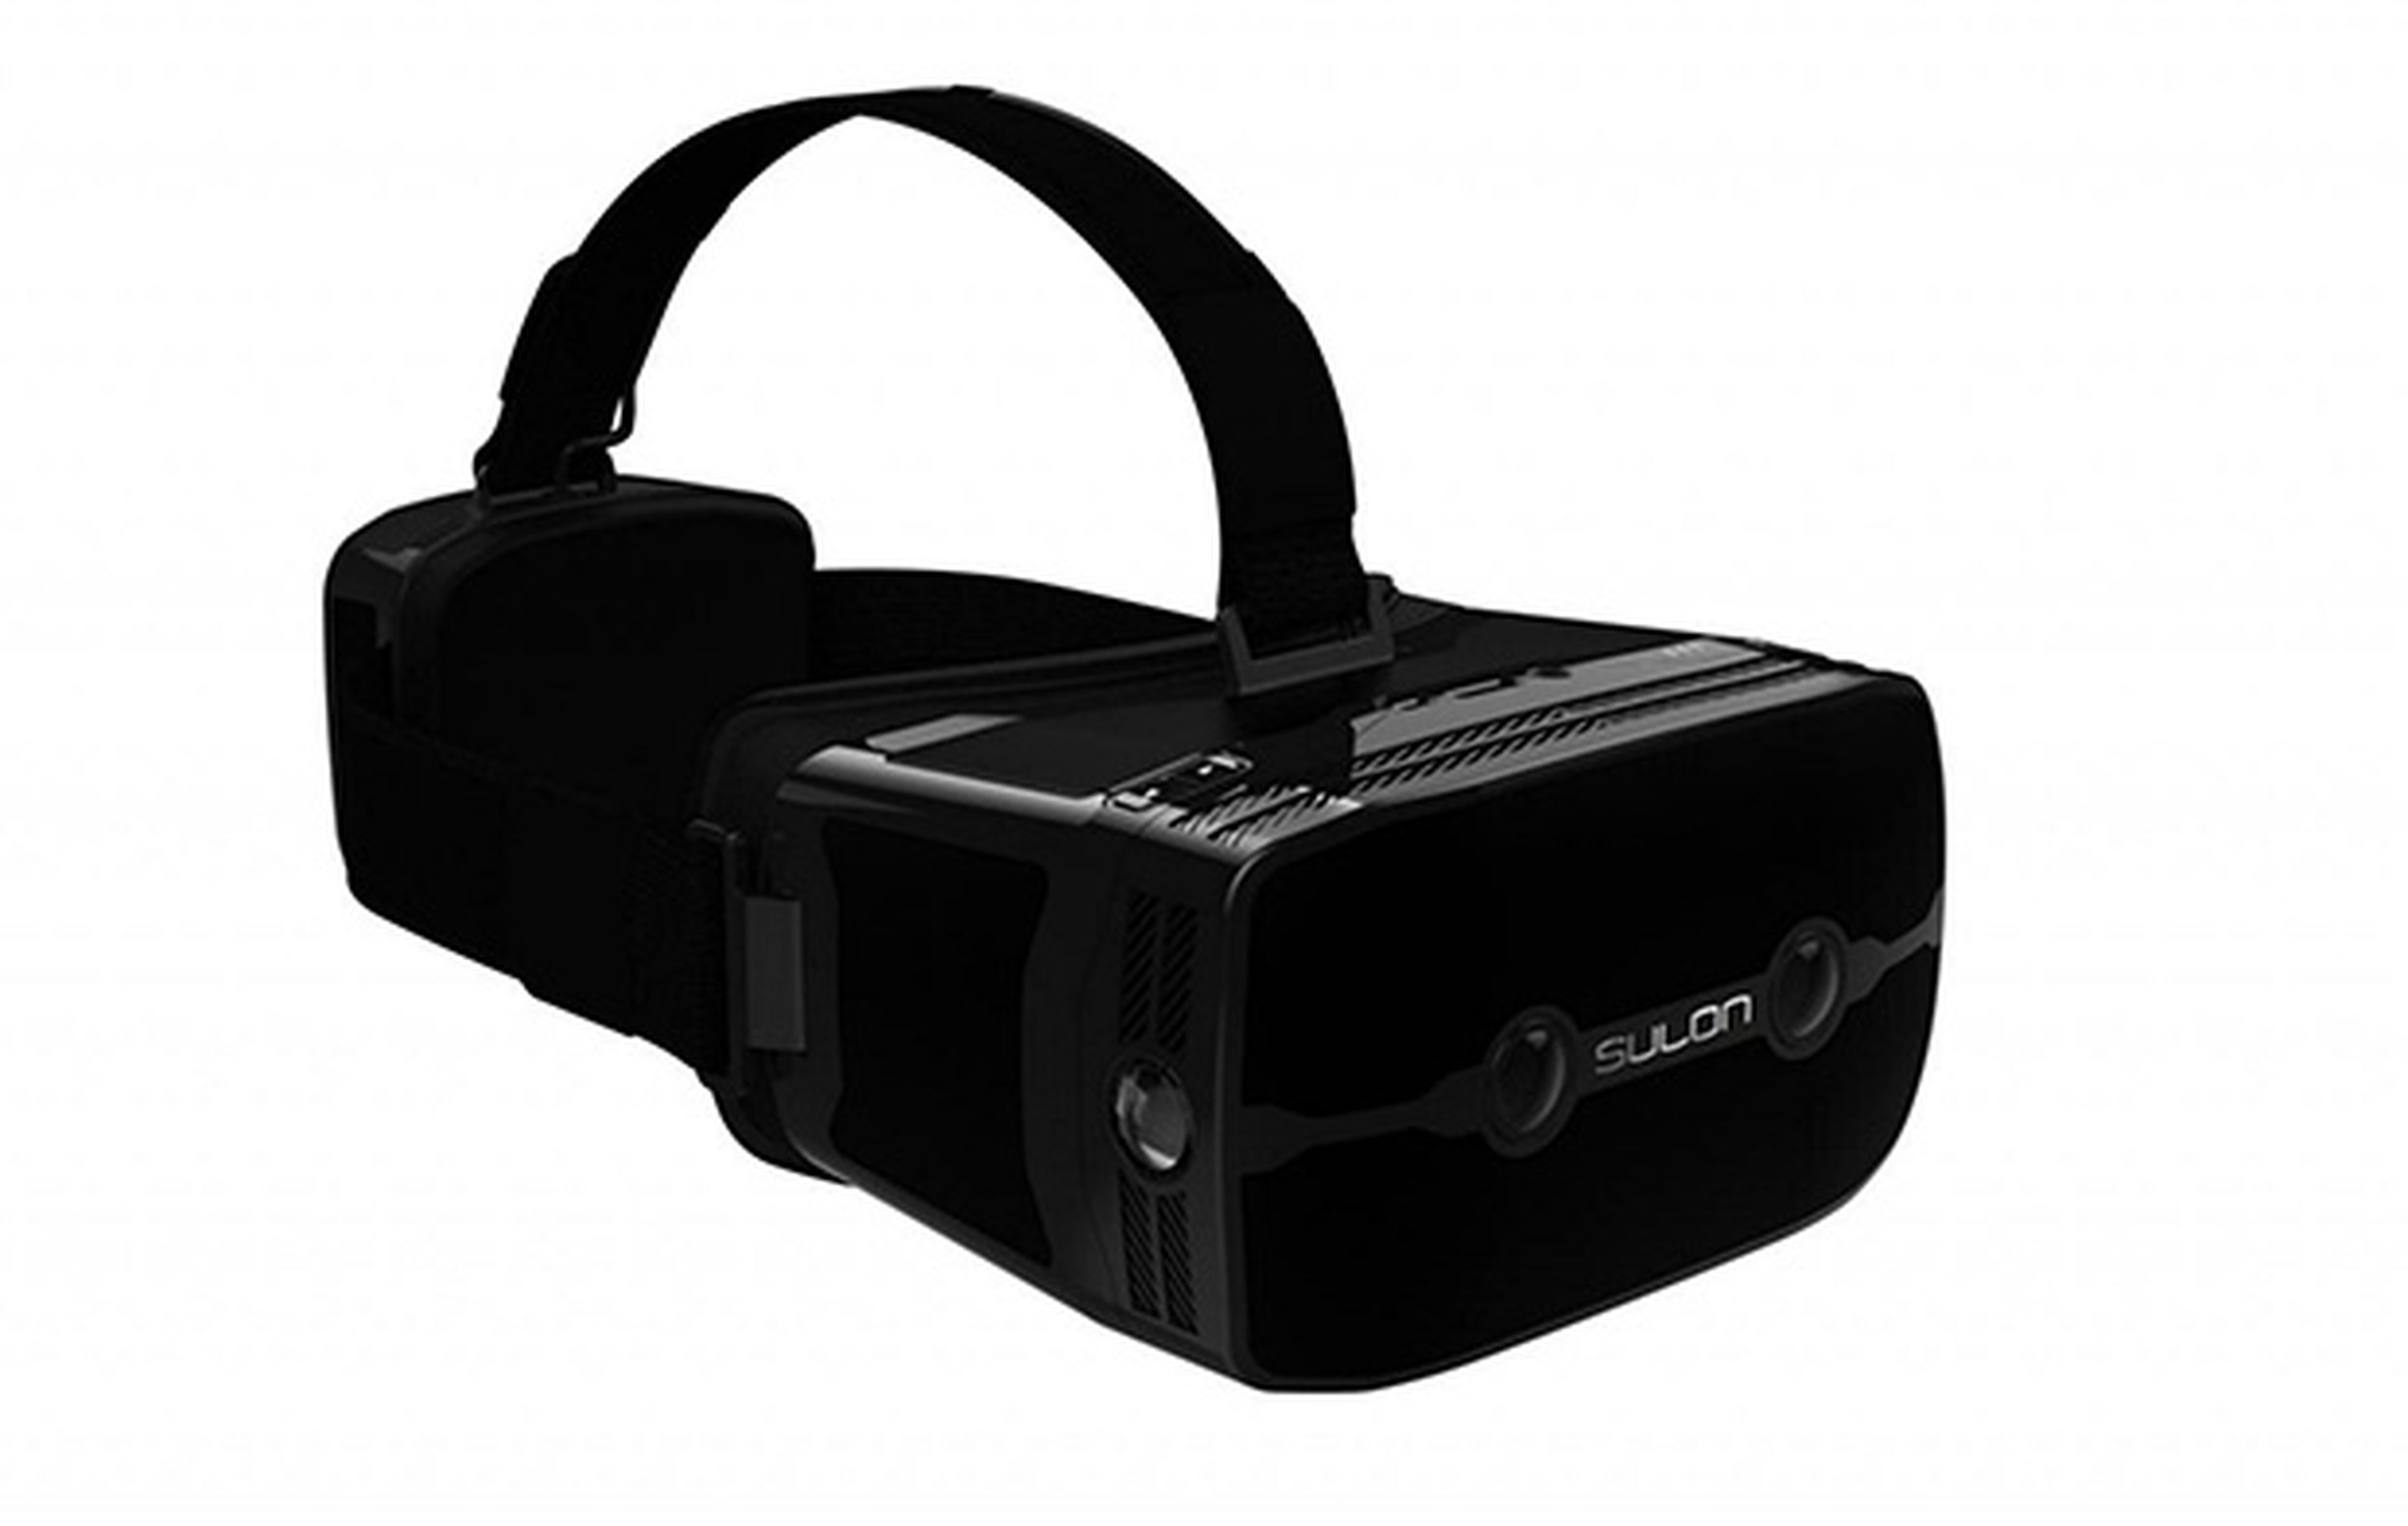 Gafas de realidad virtual y aumentada Sulon Q